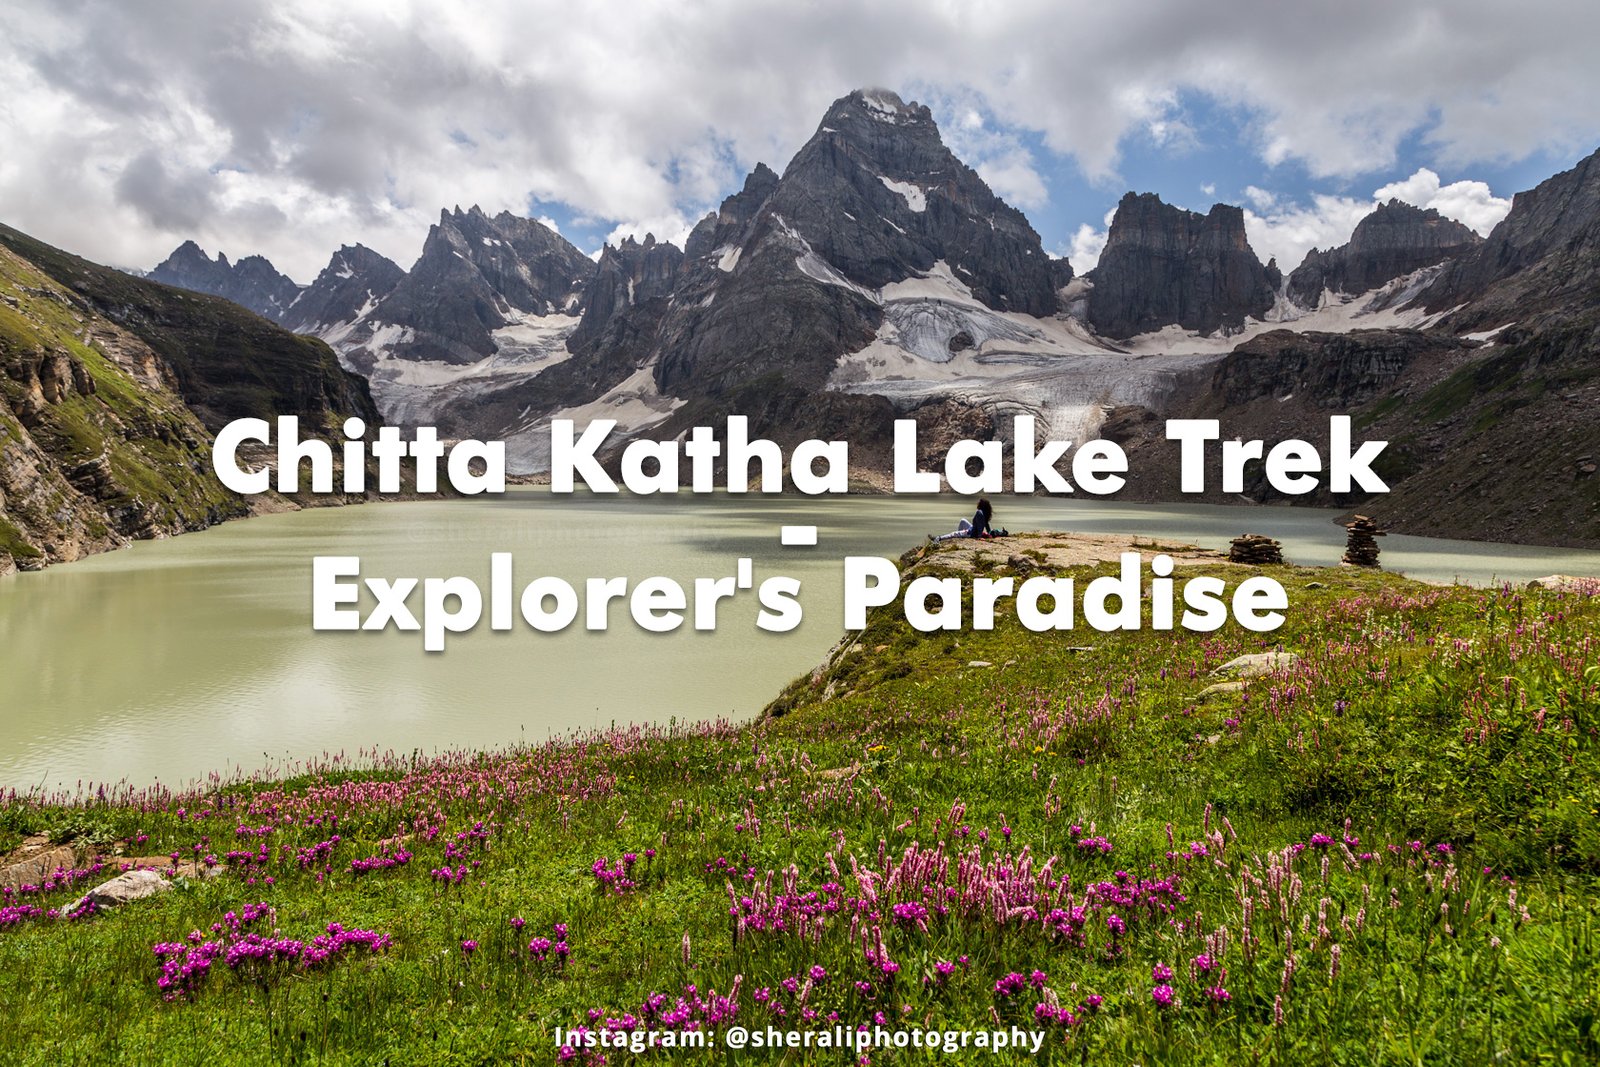 Chitta Katha Lake Trek - Explorer's Paradise